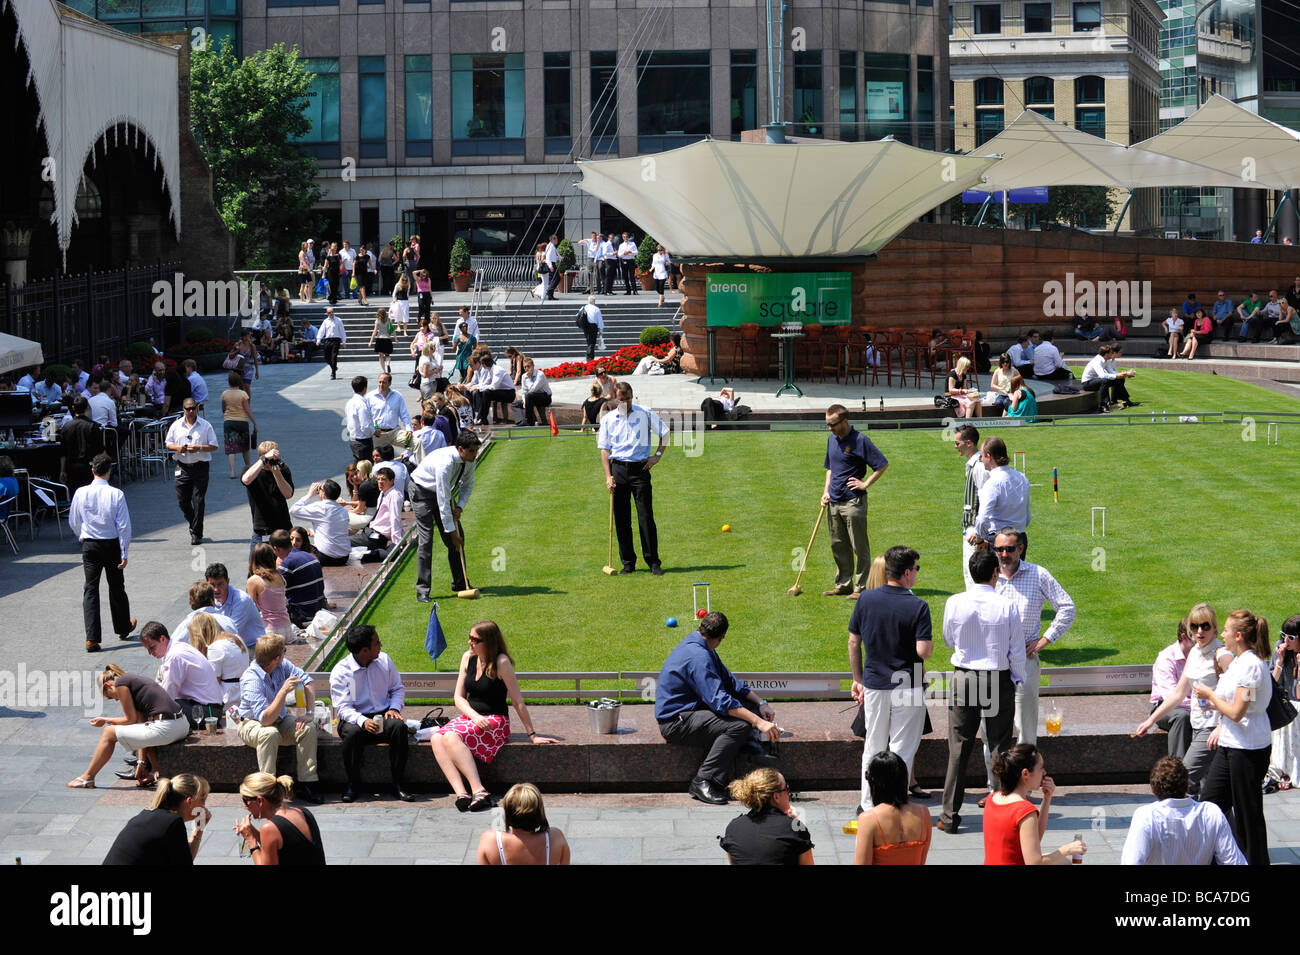 Ville de London les ouvriers prennent à l'extérieur sont au cours de leur pause déjeuner dans la canicule - croquet sur la pelouse de broadgate Banque D'Images